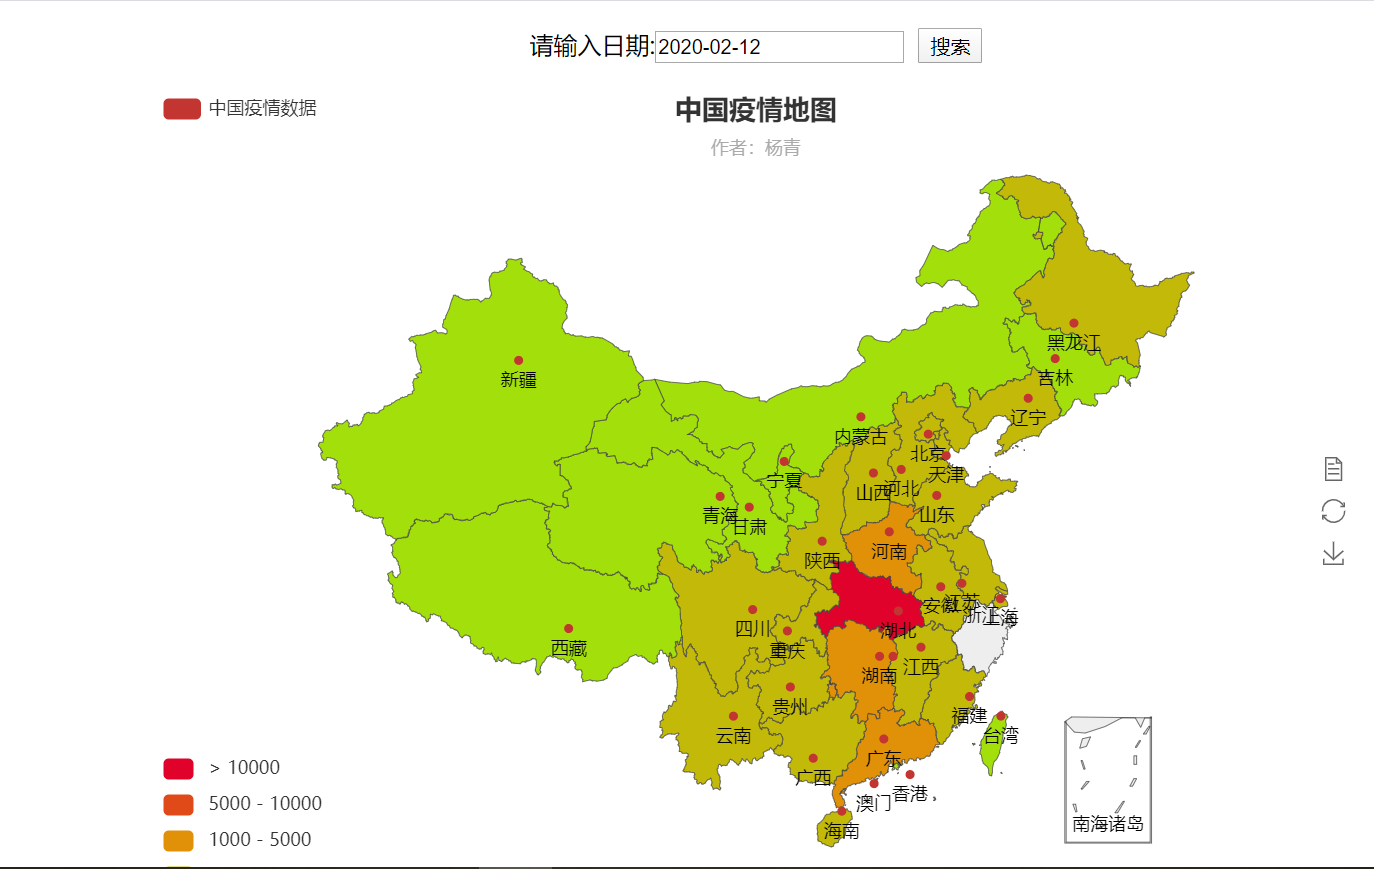 使用mvc架构利用ajax绘制中国疫情地图